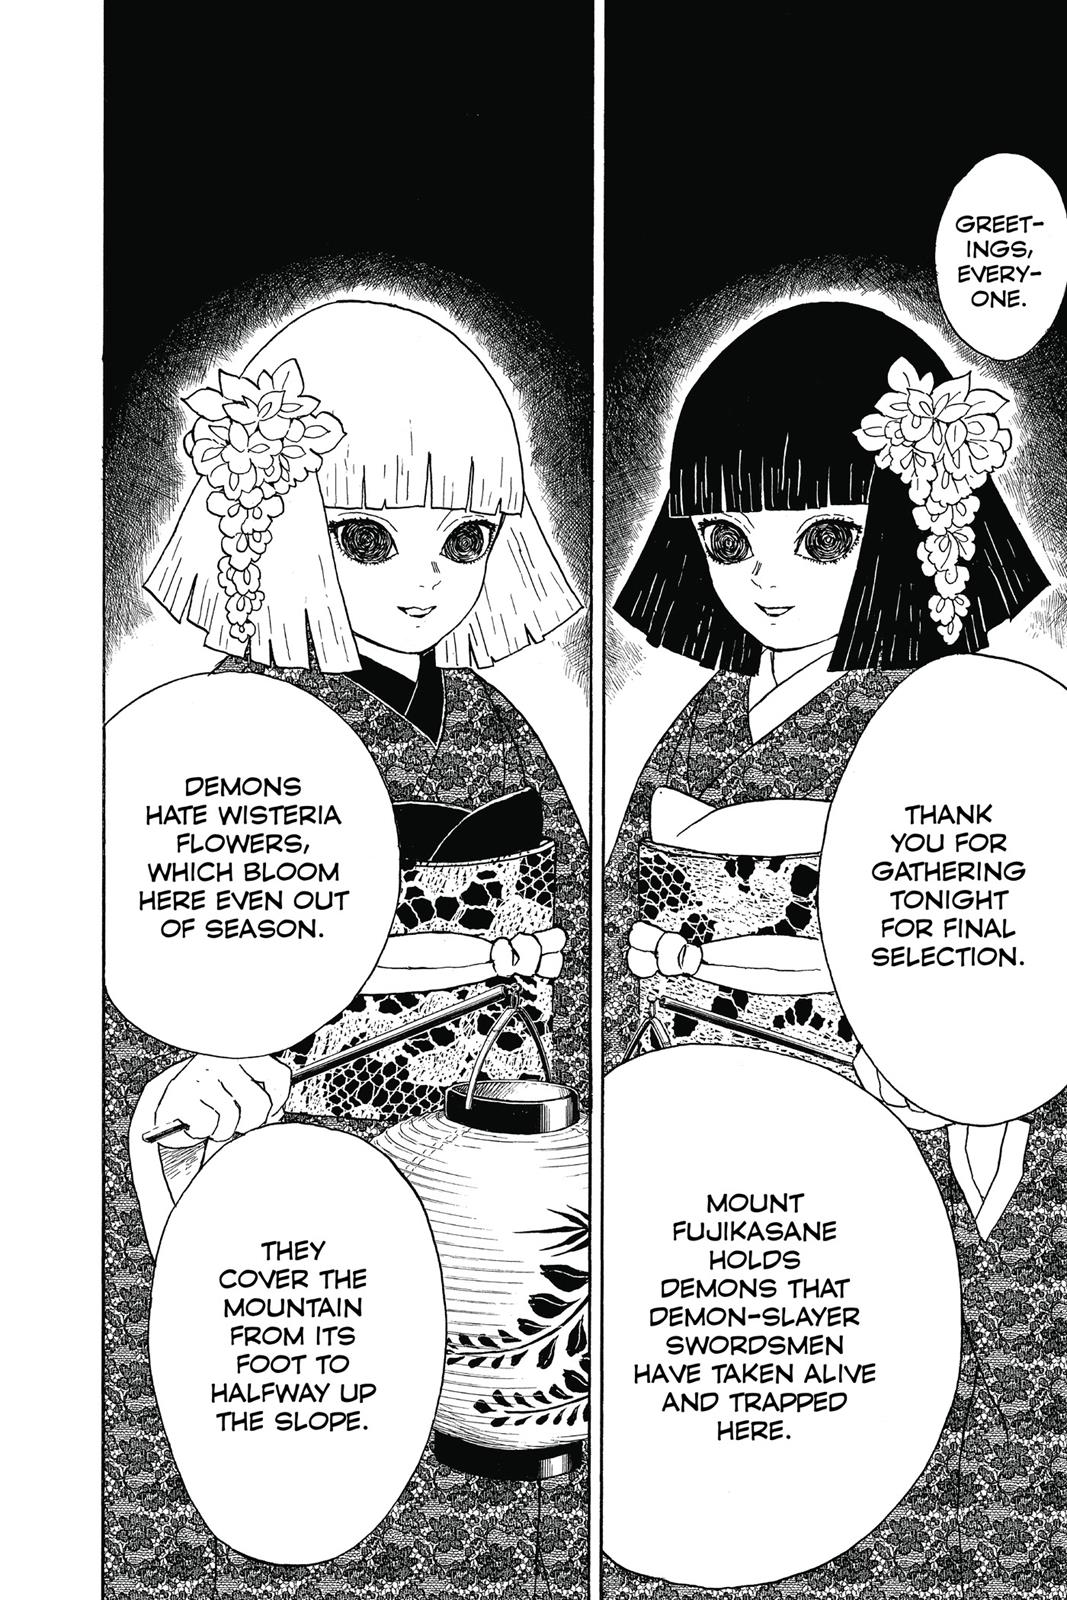 Demon Slayer Manga Manga Chapter - 6 - image 1